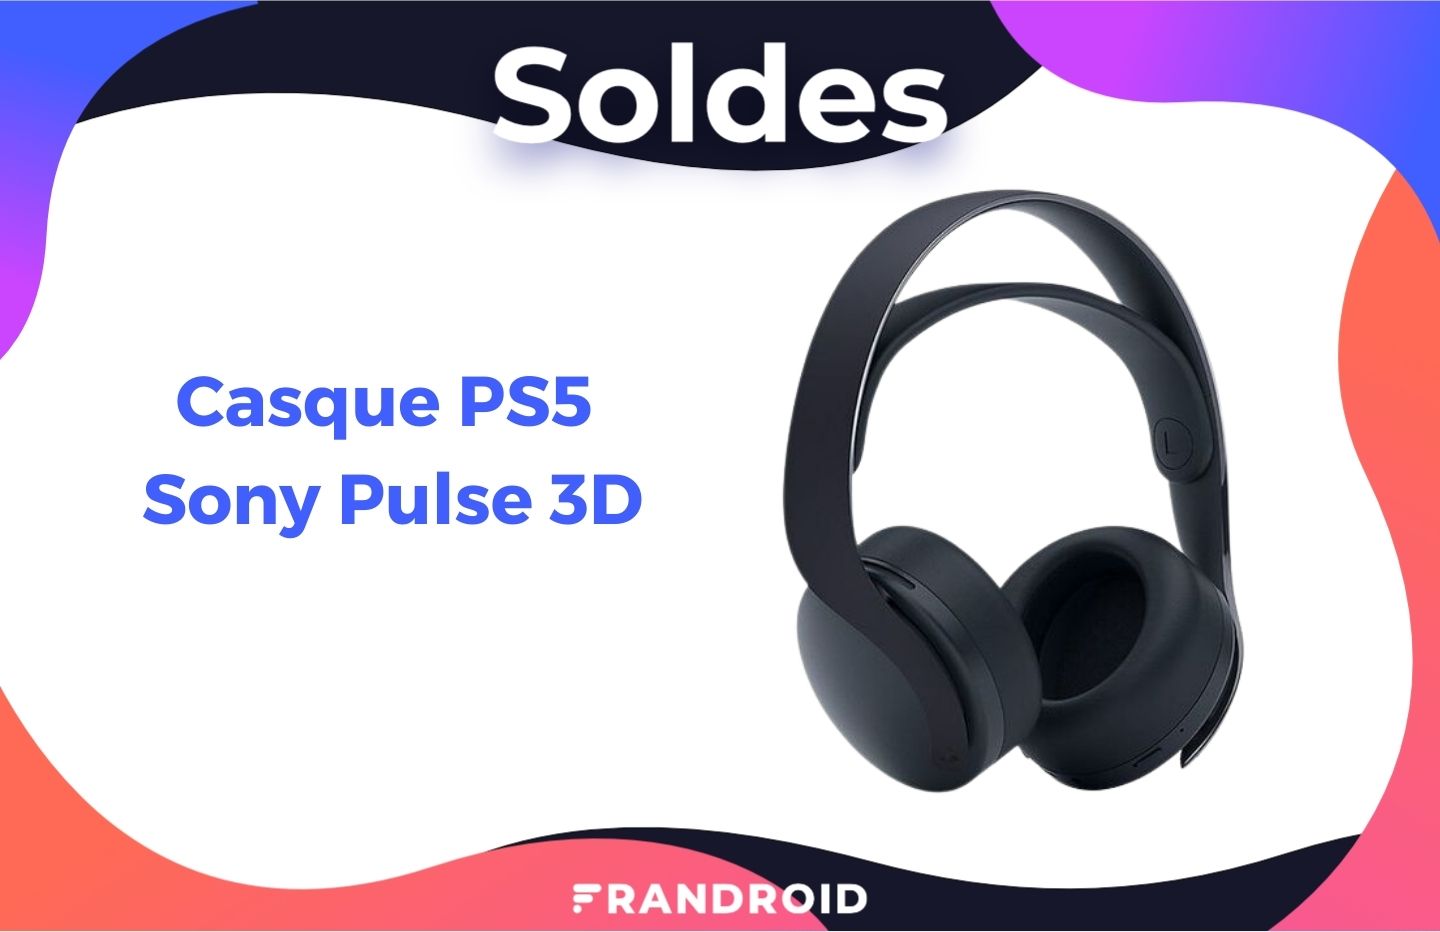 Le prix du casque Sony Pulse 3D de la PS5 est en baisse durant les soldes